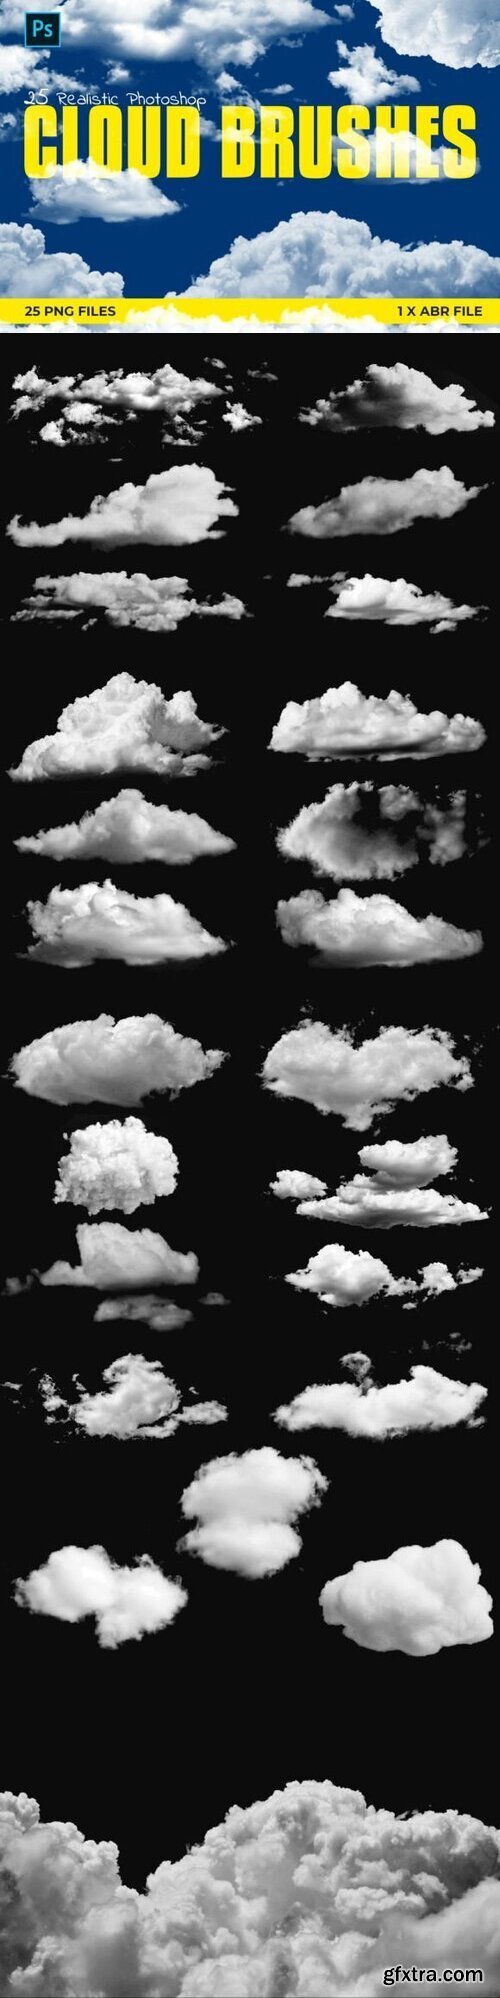 25 Photoshop Cloud Brushes